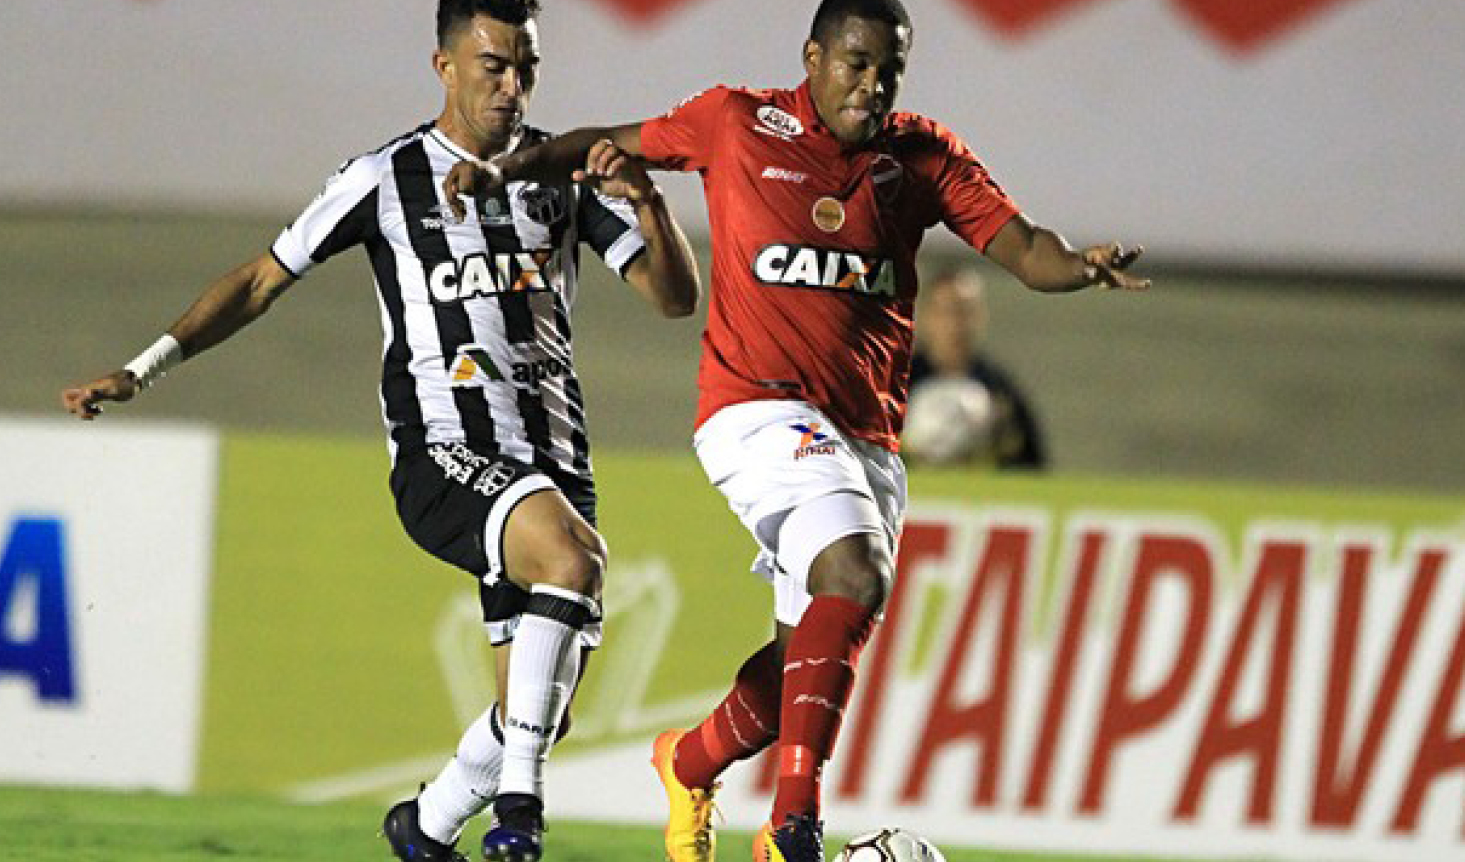 No Serra Dourada, Ceará sai atrás, mas domina 2º tempo e arranca empate com Roberto